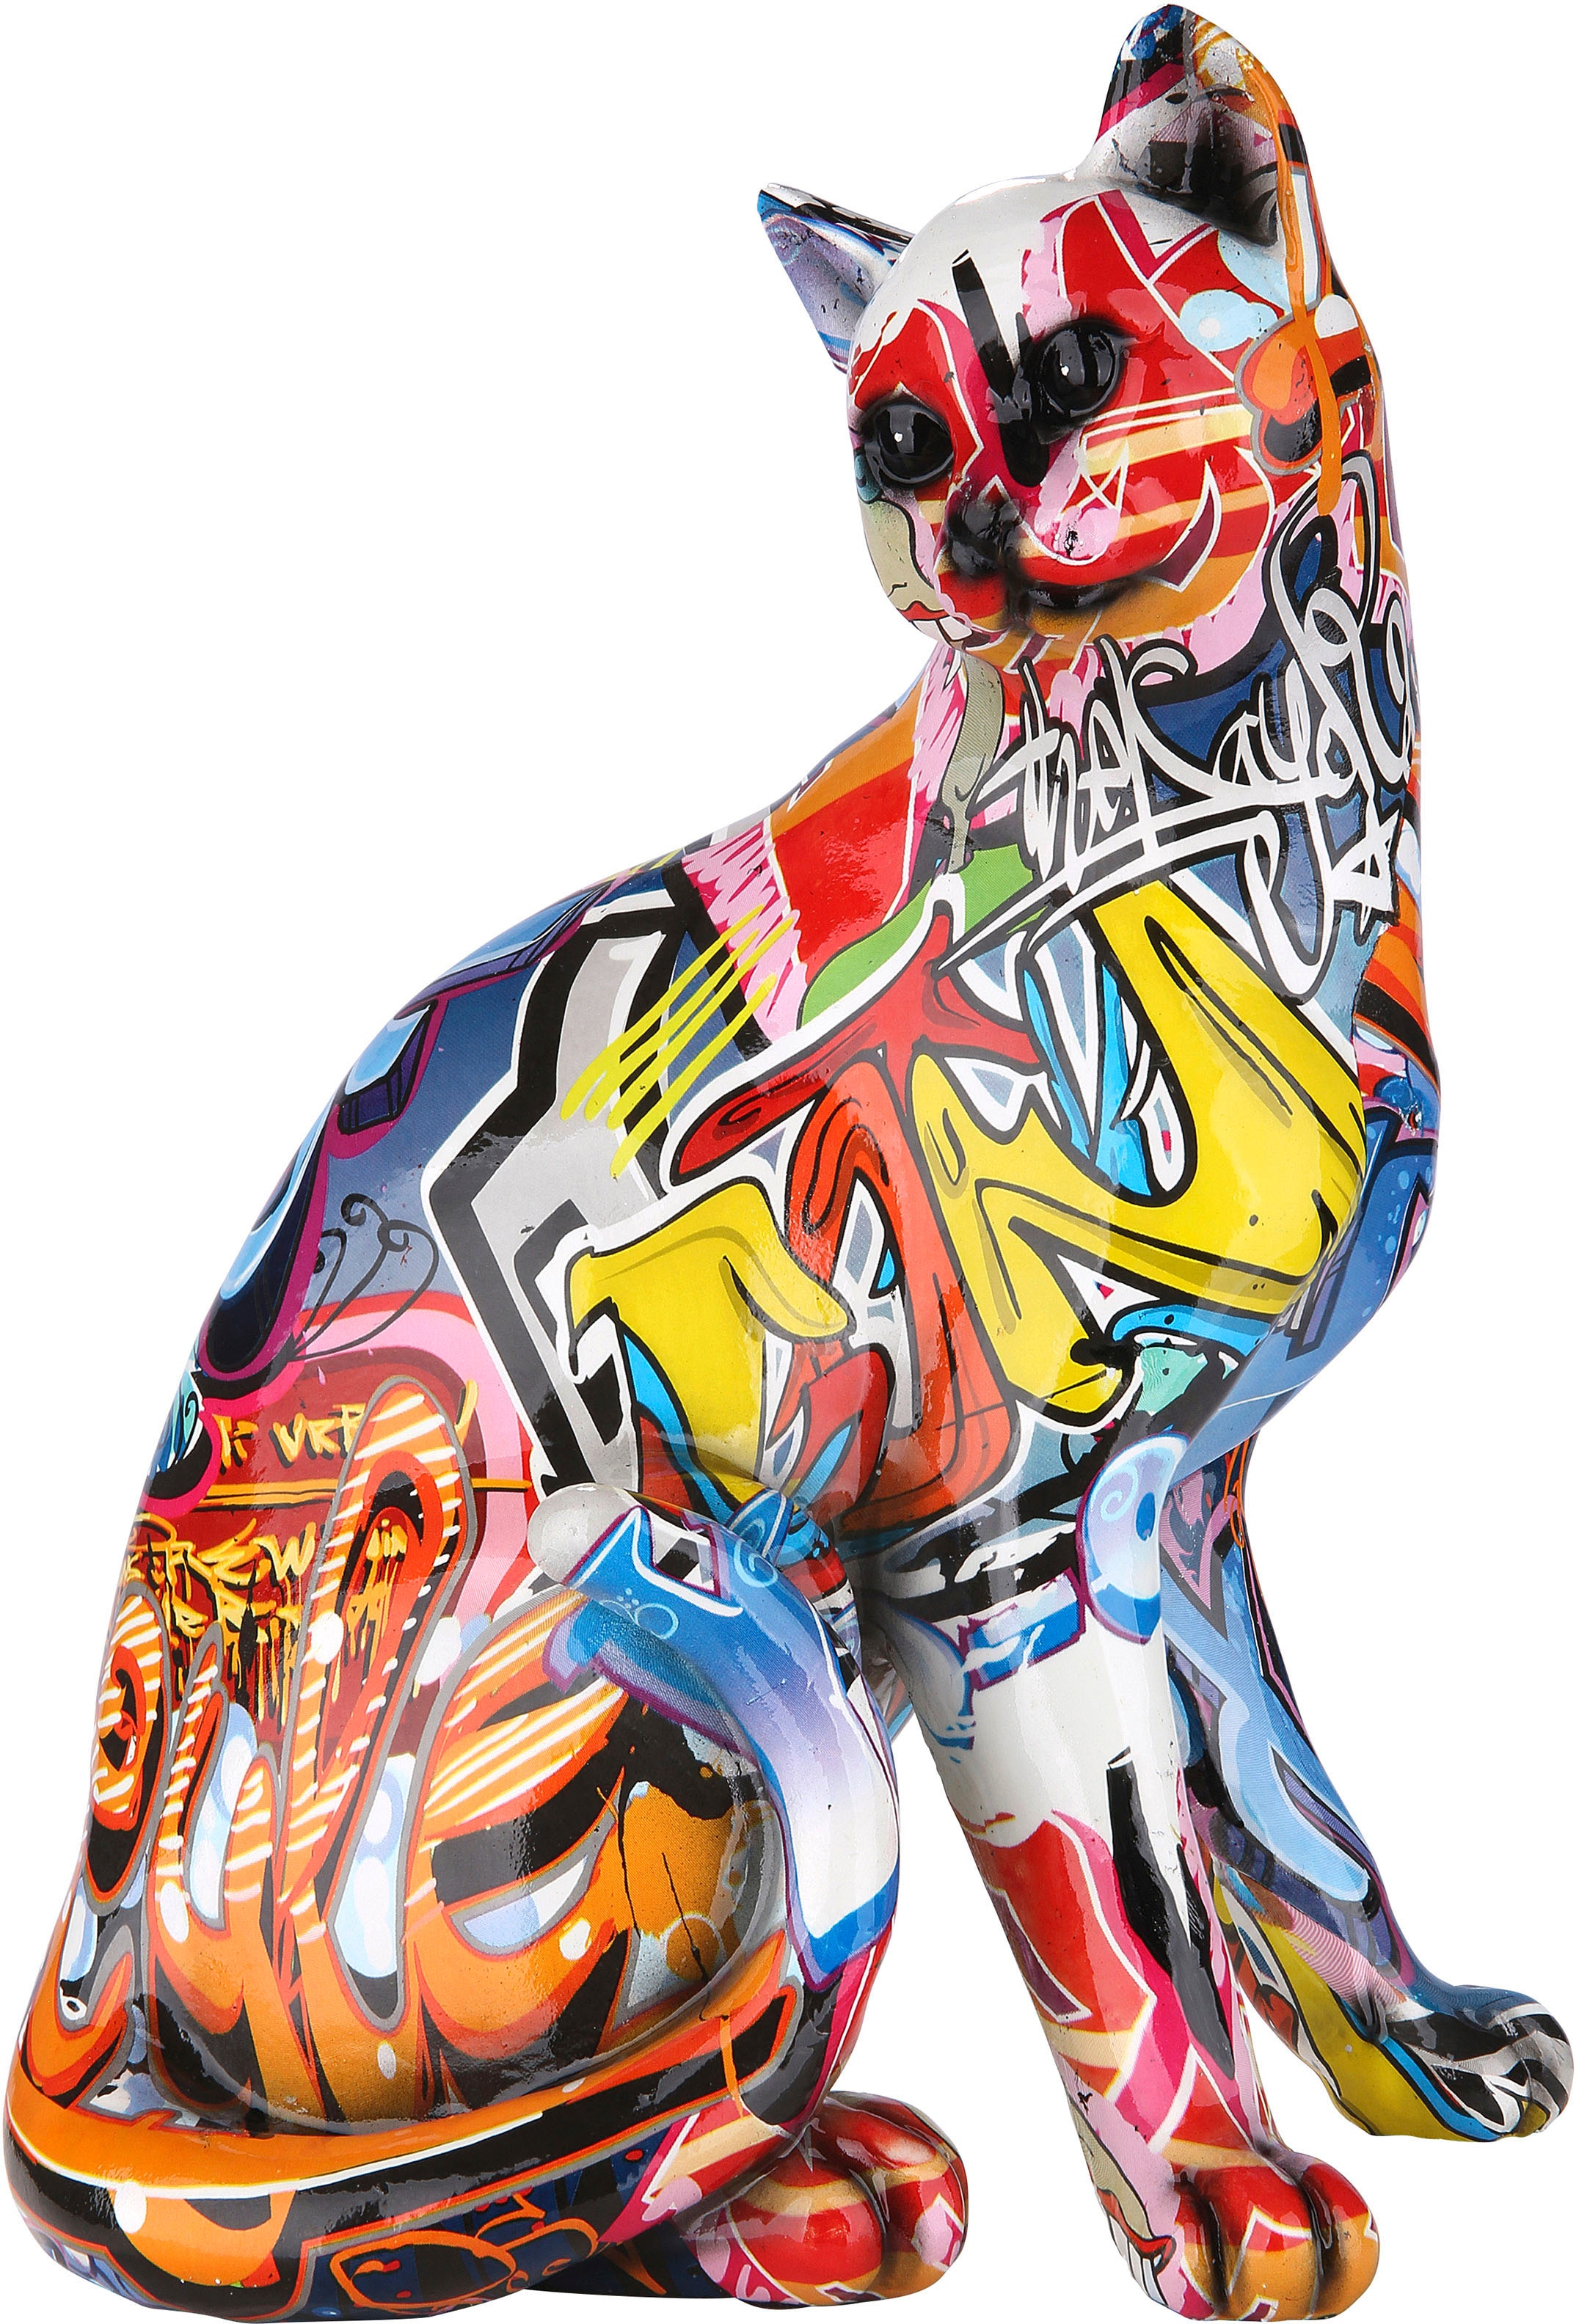 Dekofigur »Figur Pop Art Katze«, Dekoobjekt, Tierfigur, Höhe 29 cm, Wohnzimmer